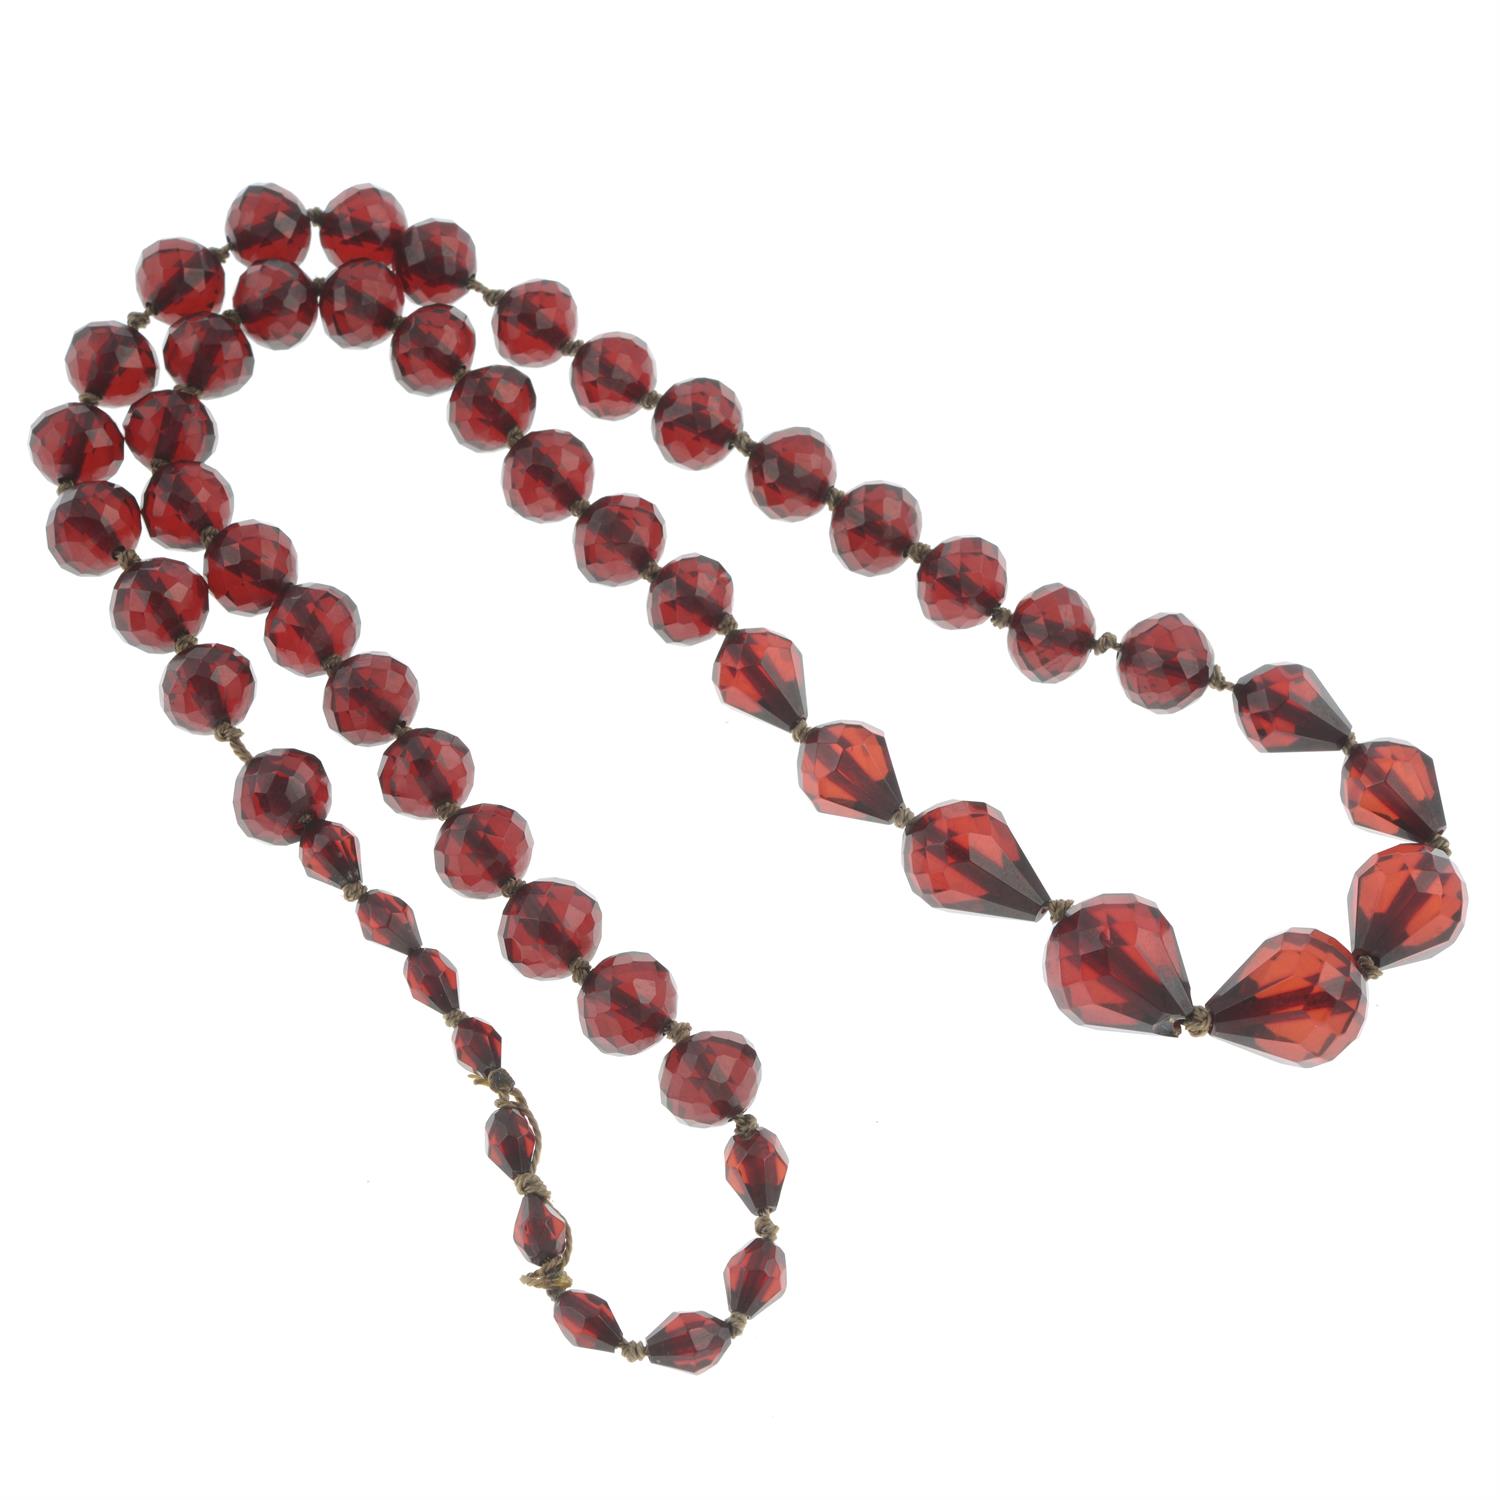 Bakelites single-strand necklace - Image 2 of 2